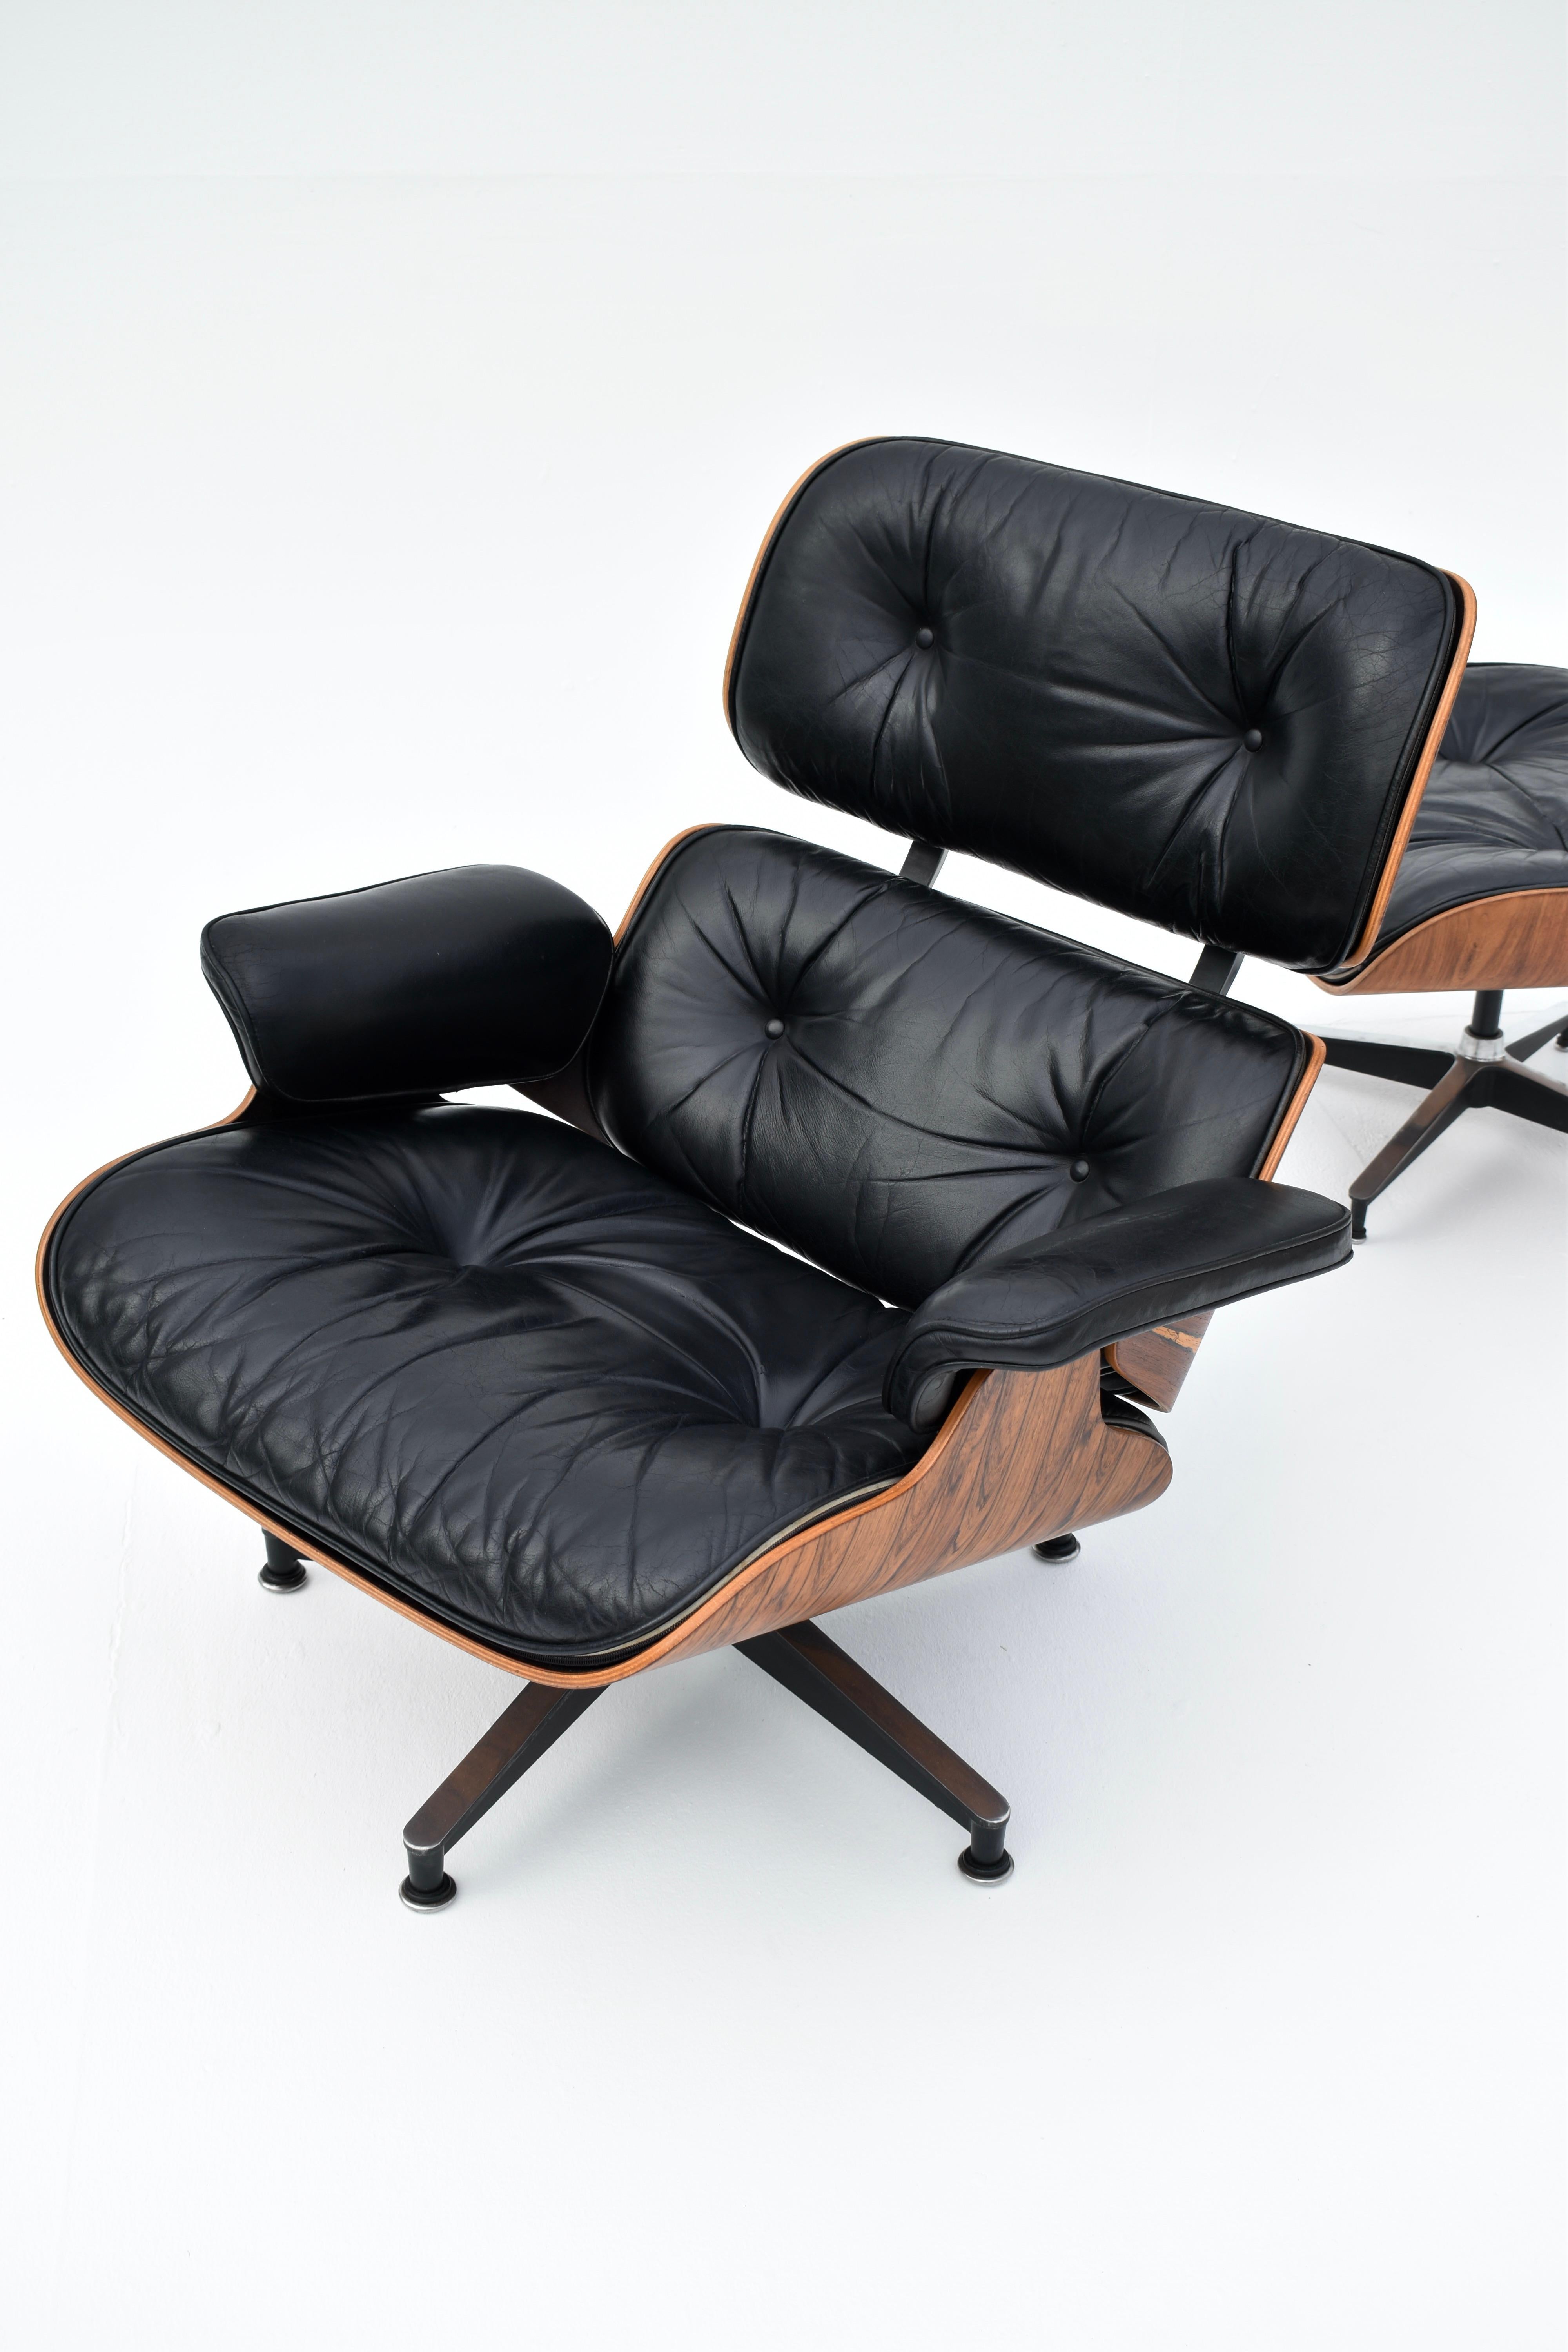 Original Eames Lounge Chair & Ottoman in brasilianischem Rosenholz und schwarzem Leder für Herman Miller.

Ein besonders schönes Exemplar, das eine sehr dramatische und attraktive Maserung auf den Palisanderfurnieren und eine wunderschöne Patina auf